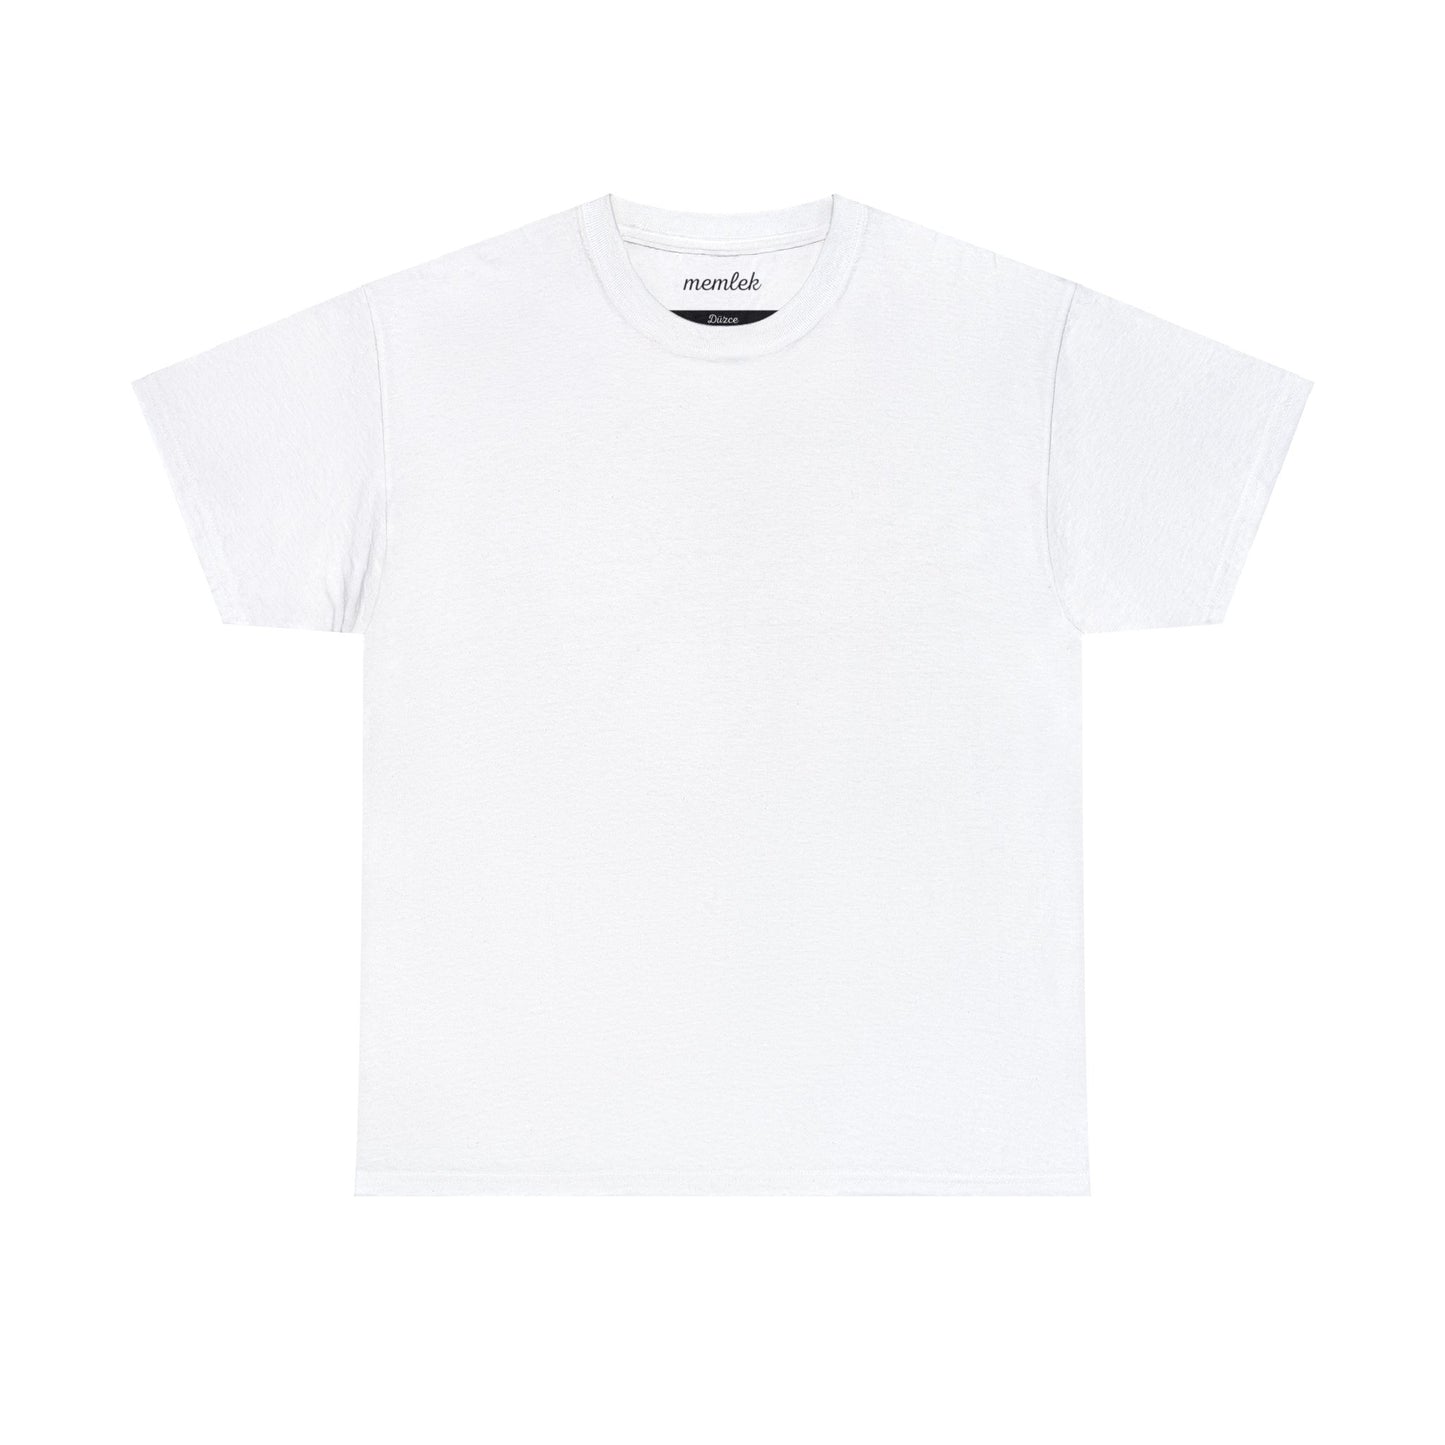 Kurt - 81 Düzce - T-Shirt - Back Print - Black/White